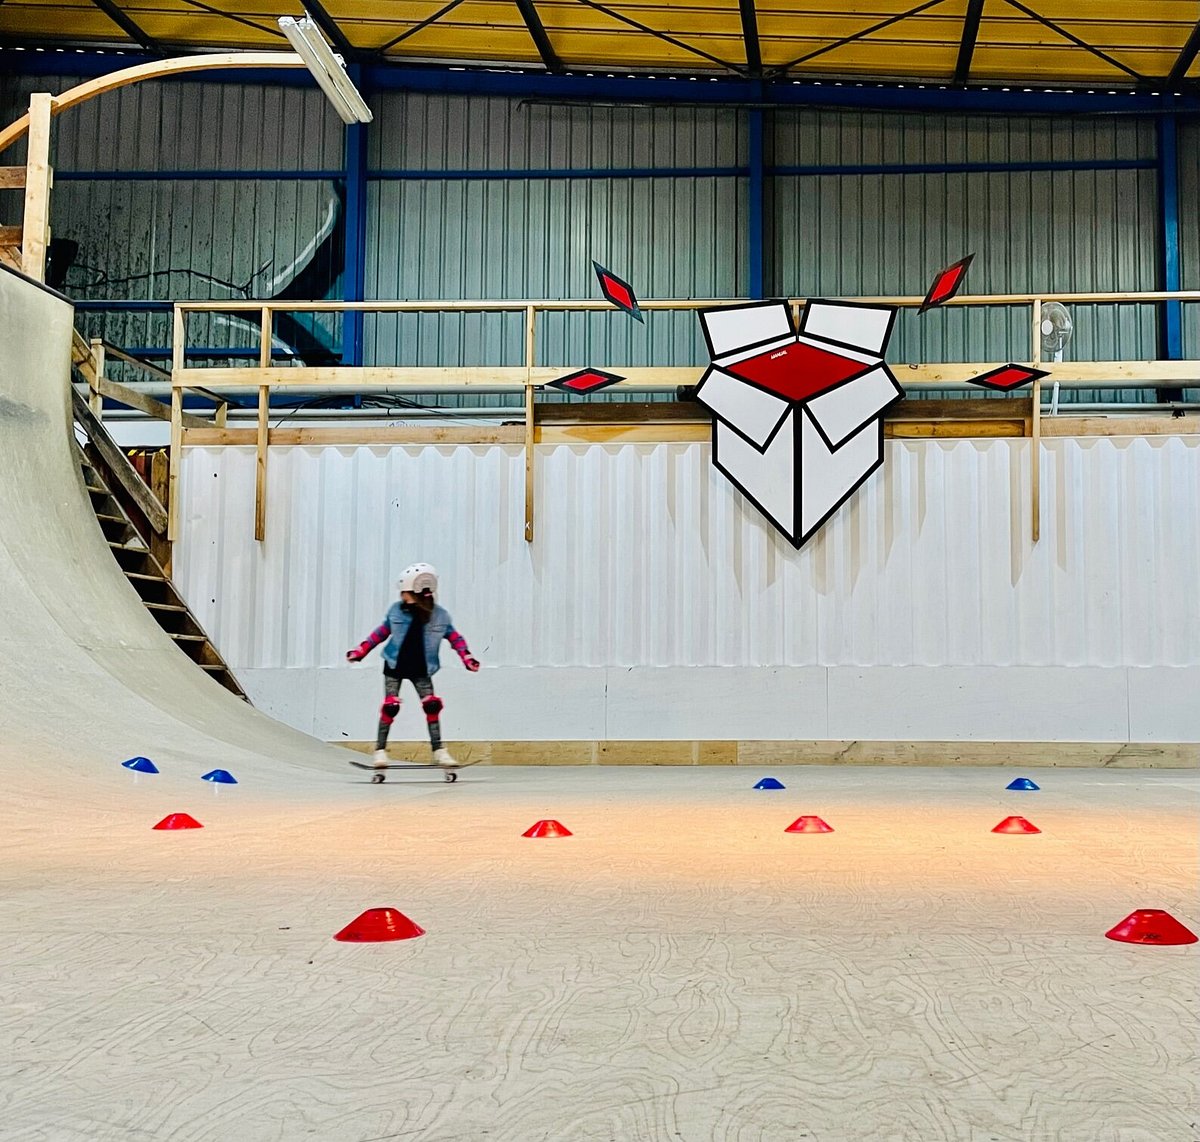 Cours de skate à Bordeaux - Le Top pour les enfants - Un Air de Bordeaux